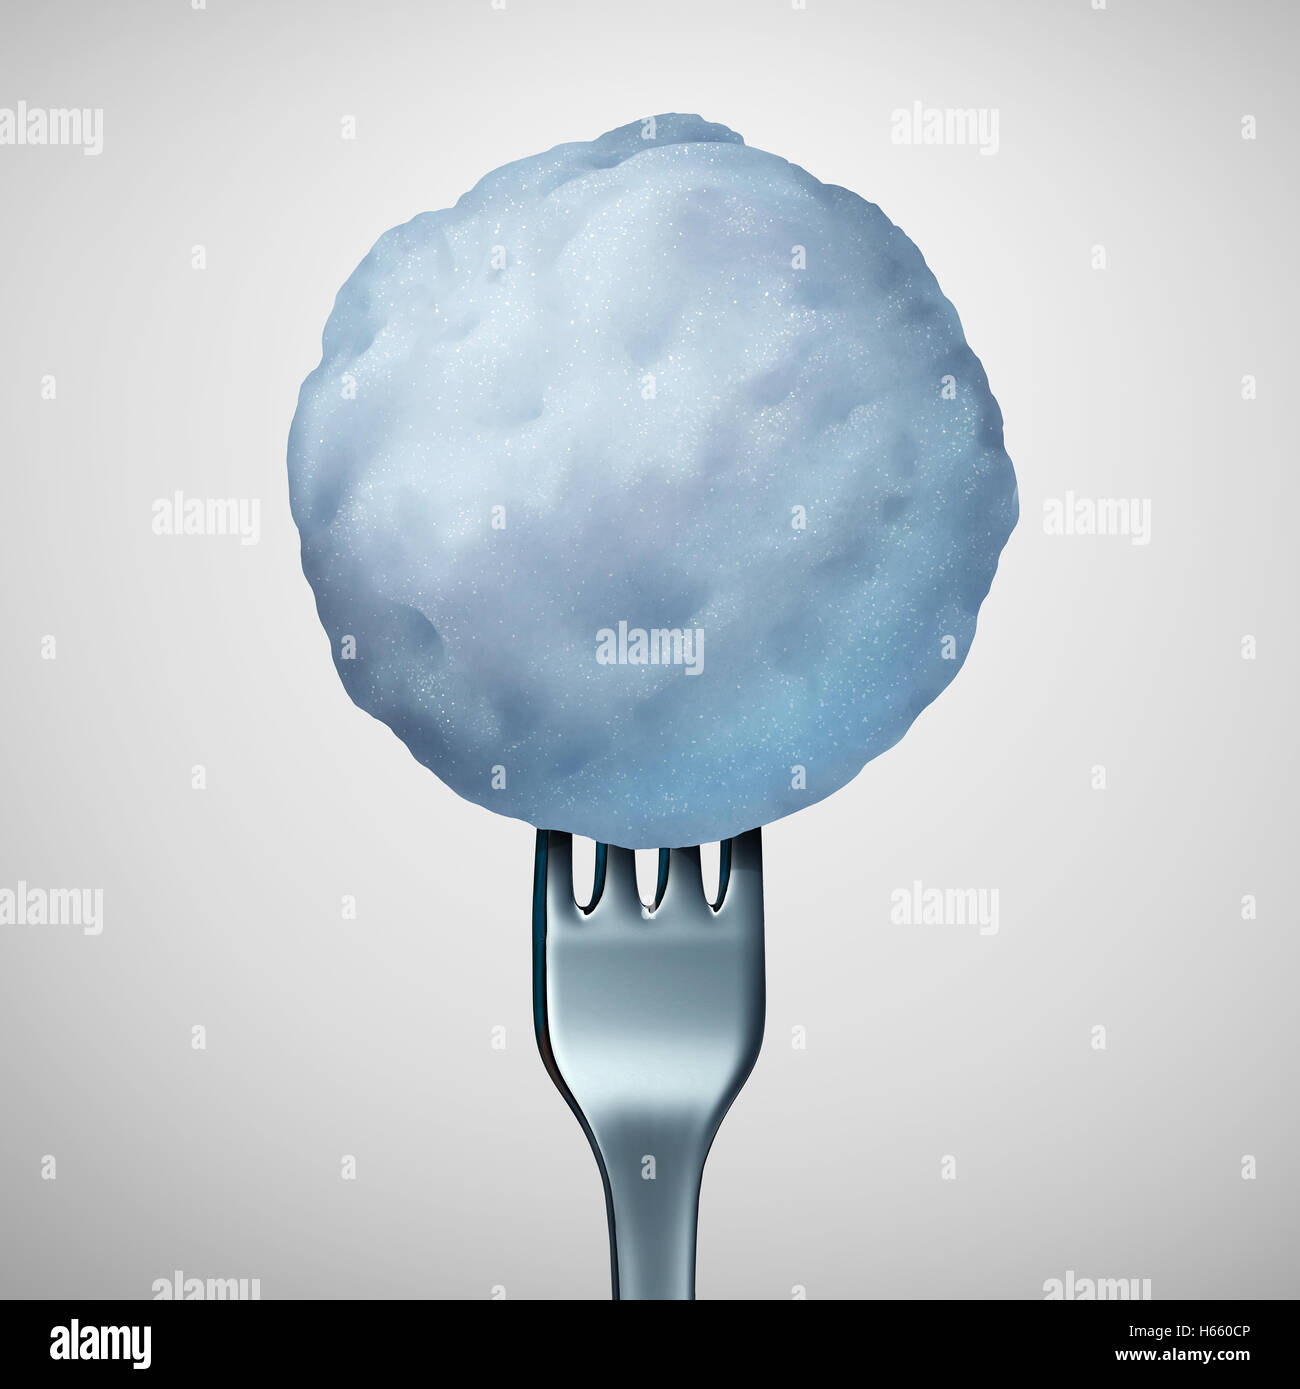 Essen und kalte Saison Speisekarte Winter als eine Gabel in einem gefrorenen Schneeball oder Schnee Ball wie eine saisonale Küche Diät mit 3D Abbildung Elemente. Stockfoto